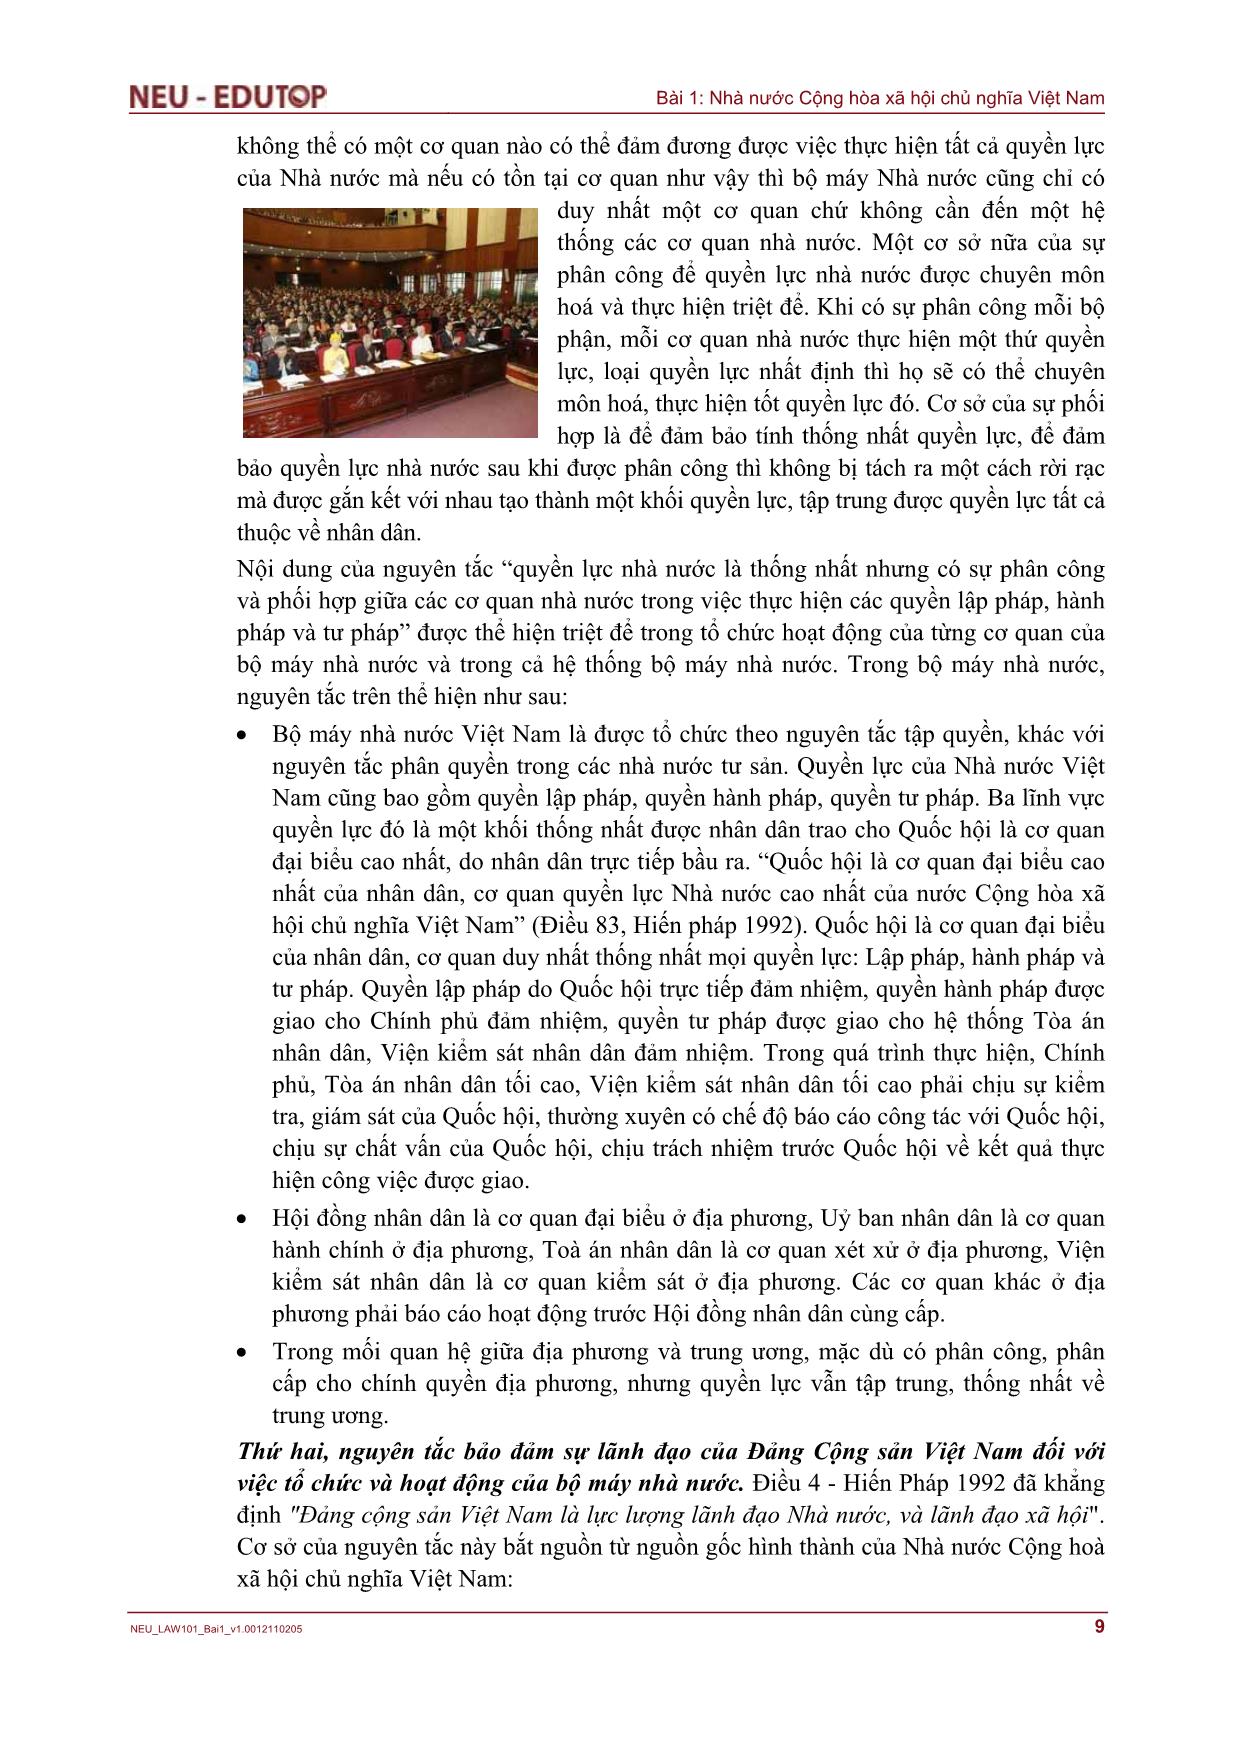 Bài giảng Những vấn đề cơ bản về Nhà nước Cộng hòa Xã hội Chủ nghĩa Việt Nam - Bài 1: Nhà nước Cộng hòa xã hội chủ nghĩa Việt Nam trang 9